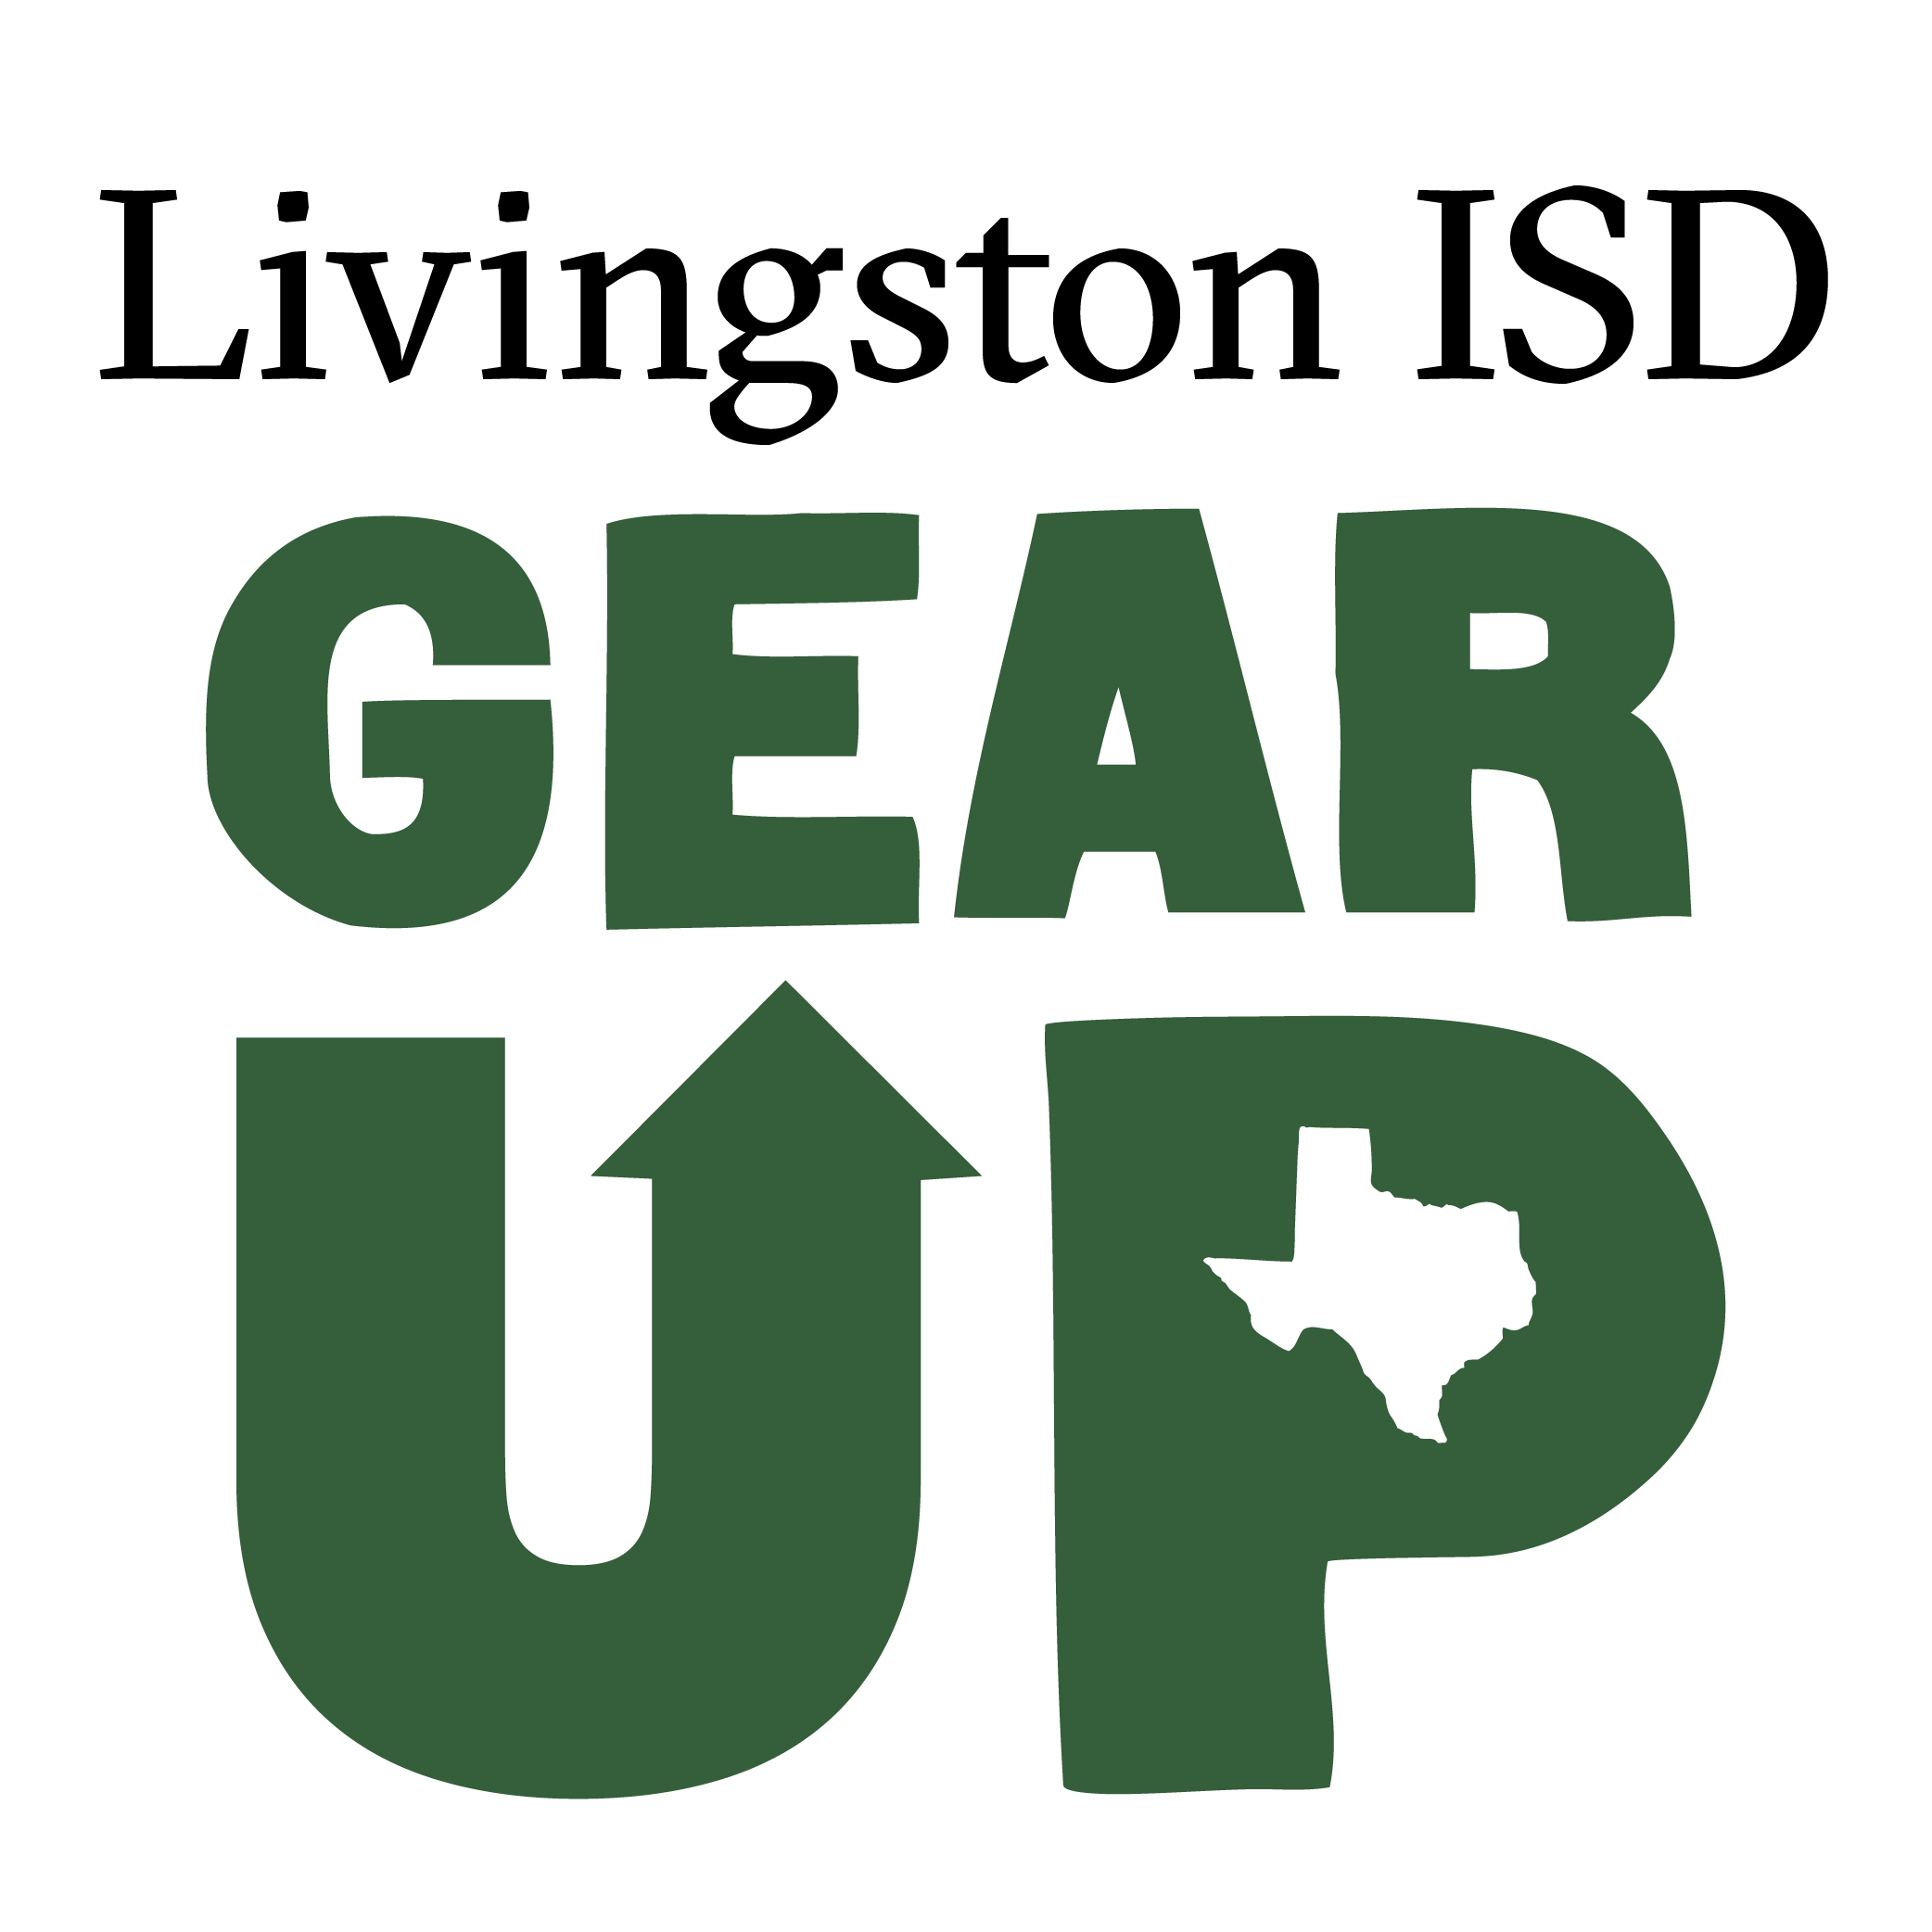 Livingston ISD GEAR UP logo